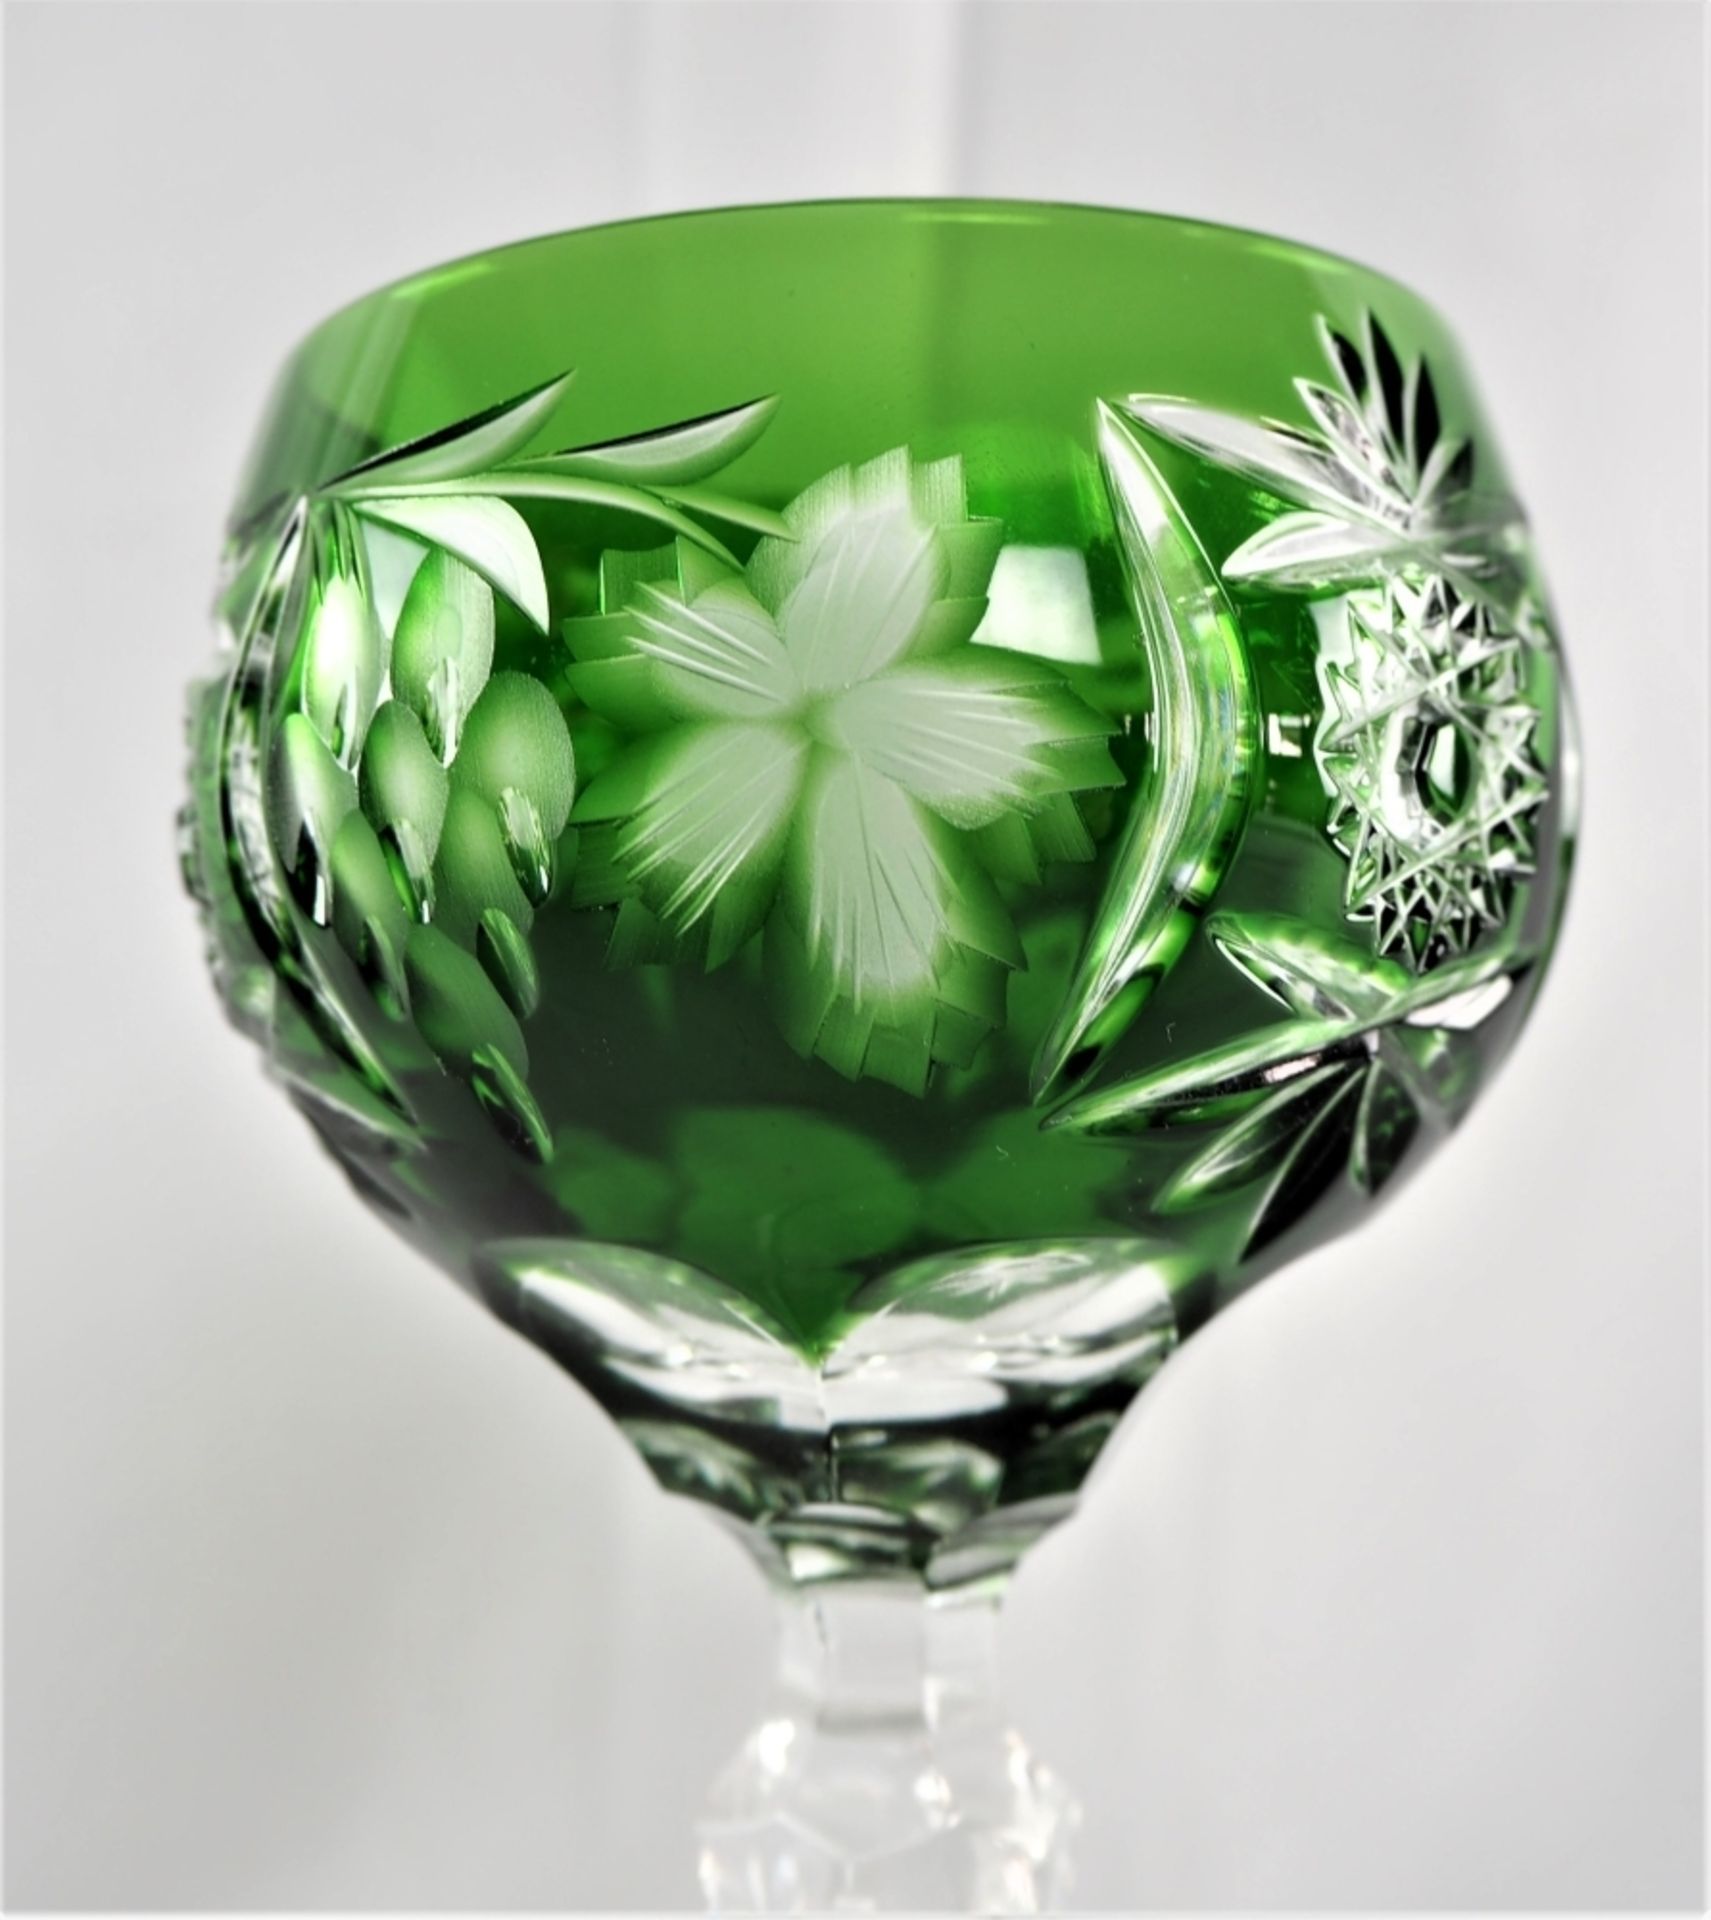 Weingläser, 13 Stück, Bleikristalldurchsichtig, mit grünem Überfang und reichlich floral - Bild 4 aus 4